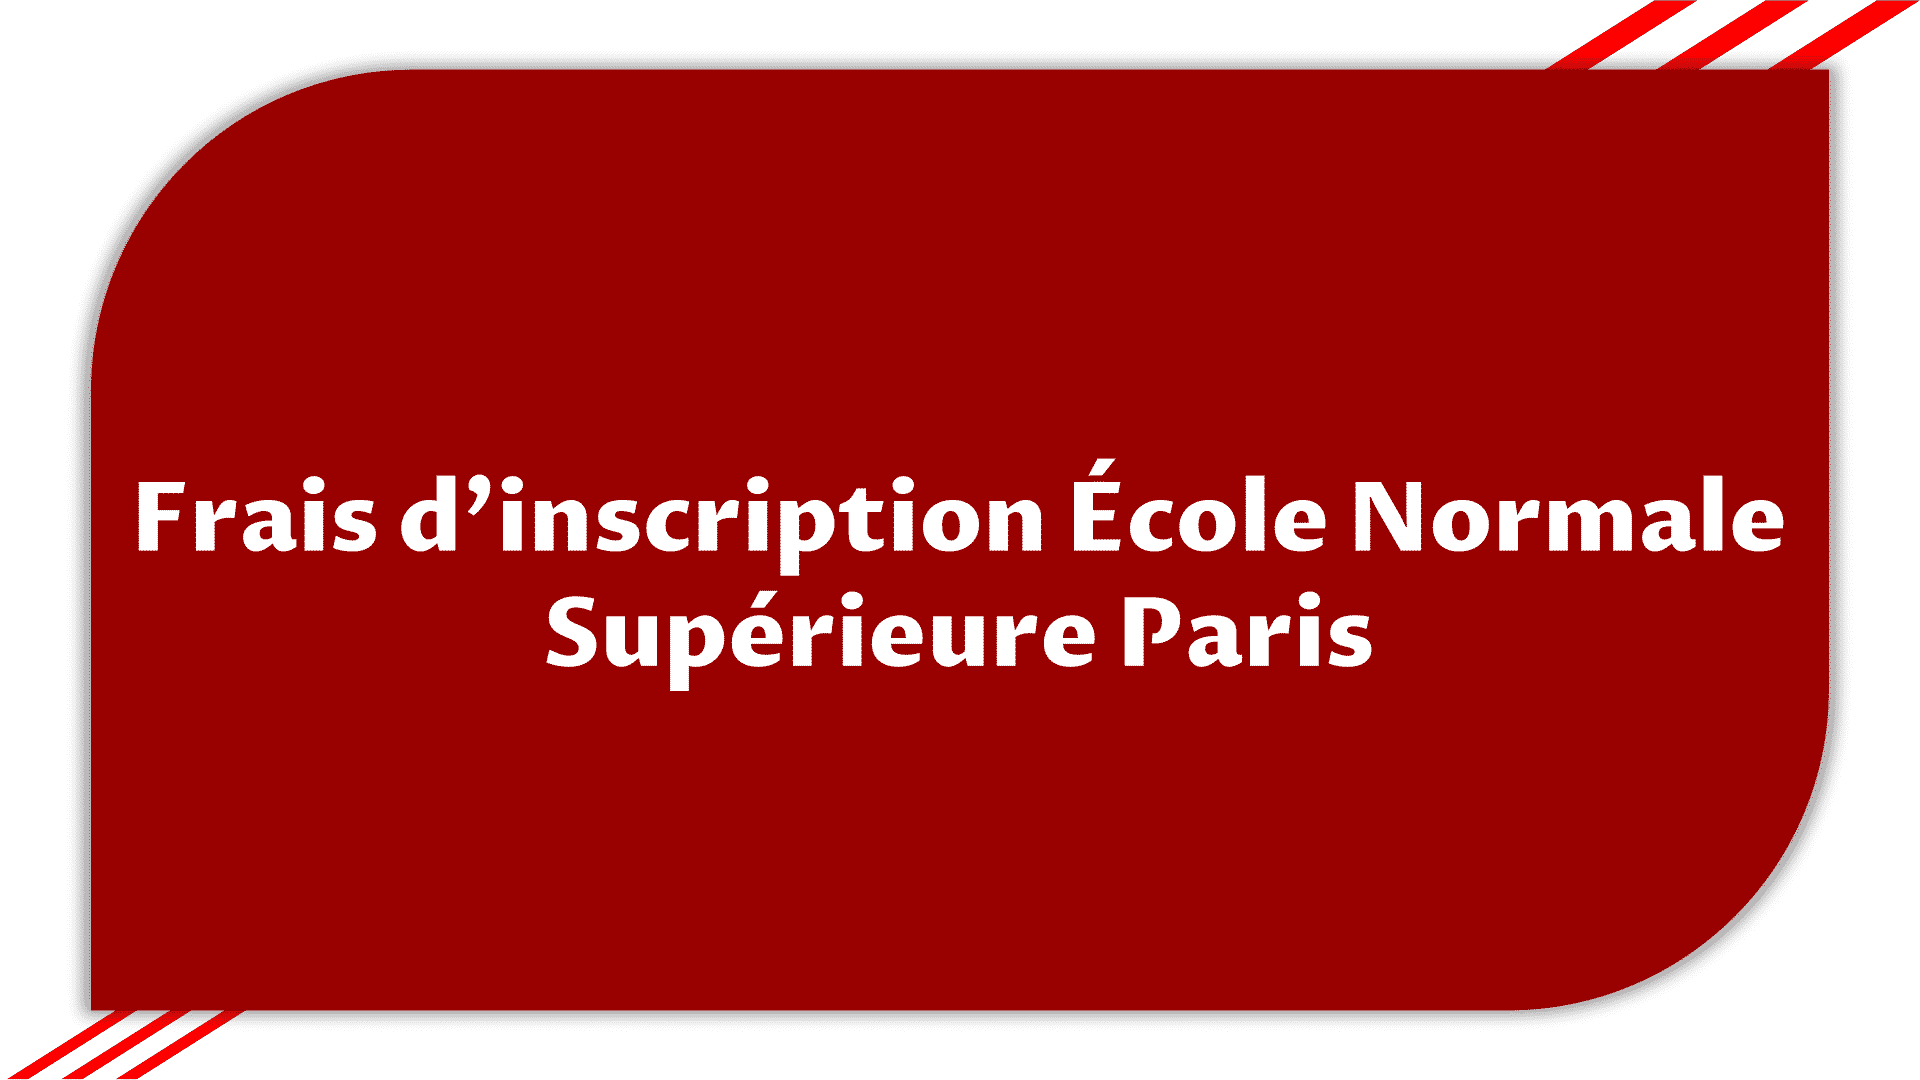 Frais d'inscription Ecole Normale Supérieure Paris 